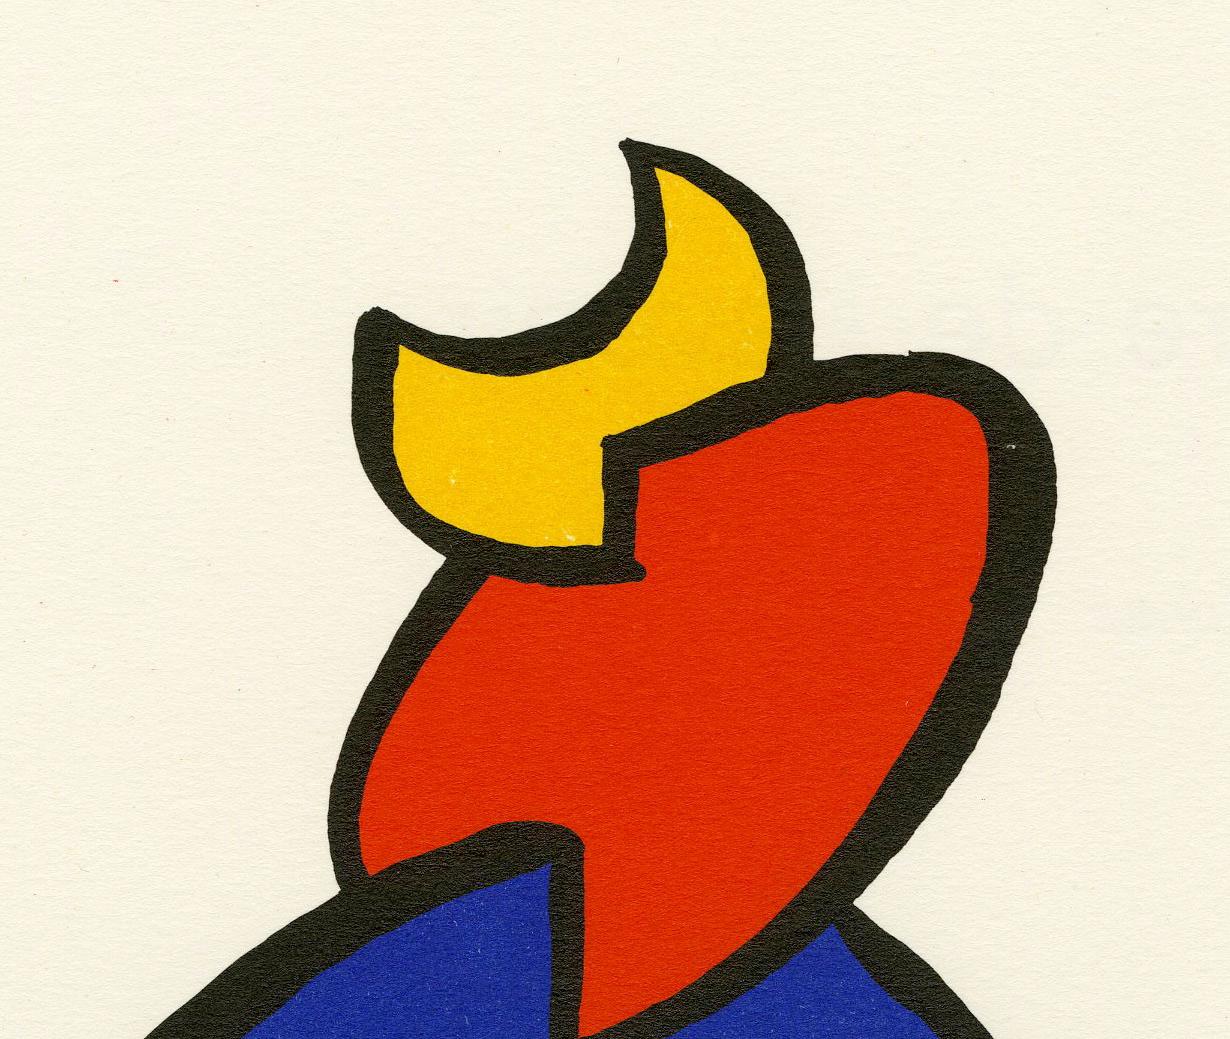 Untitled (Plate 1) DLM - Print by Alexander Calder